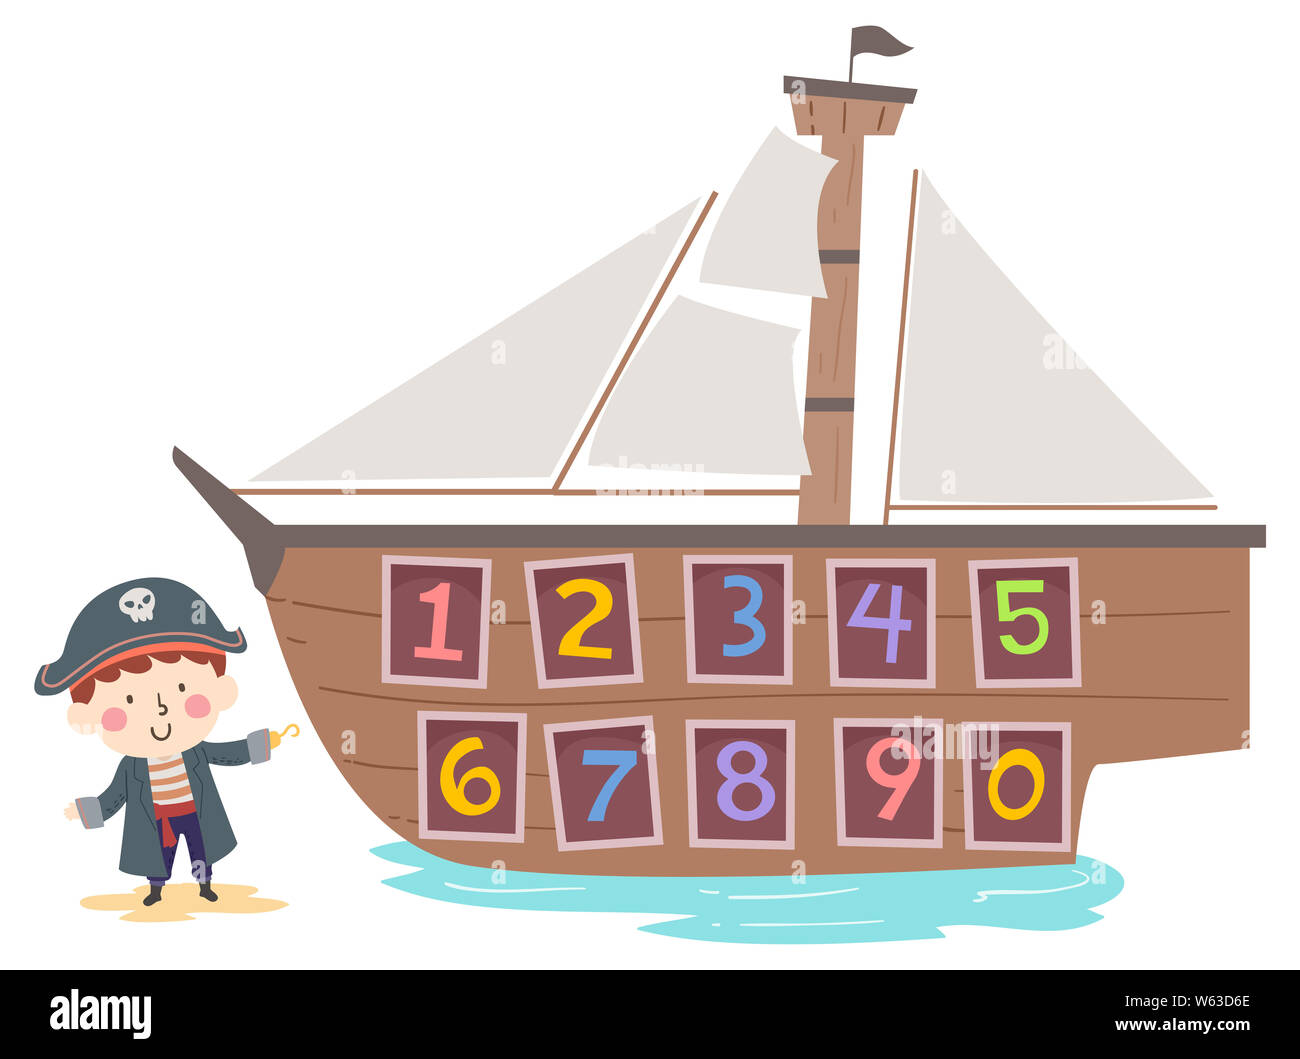 Abbildung: ein Kind Junge mit Piraten Kostüm präsentiert sein Schiff mit Zahlen von Eins bis Null Stockfoto